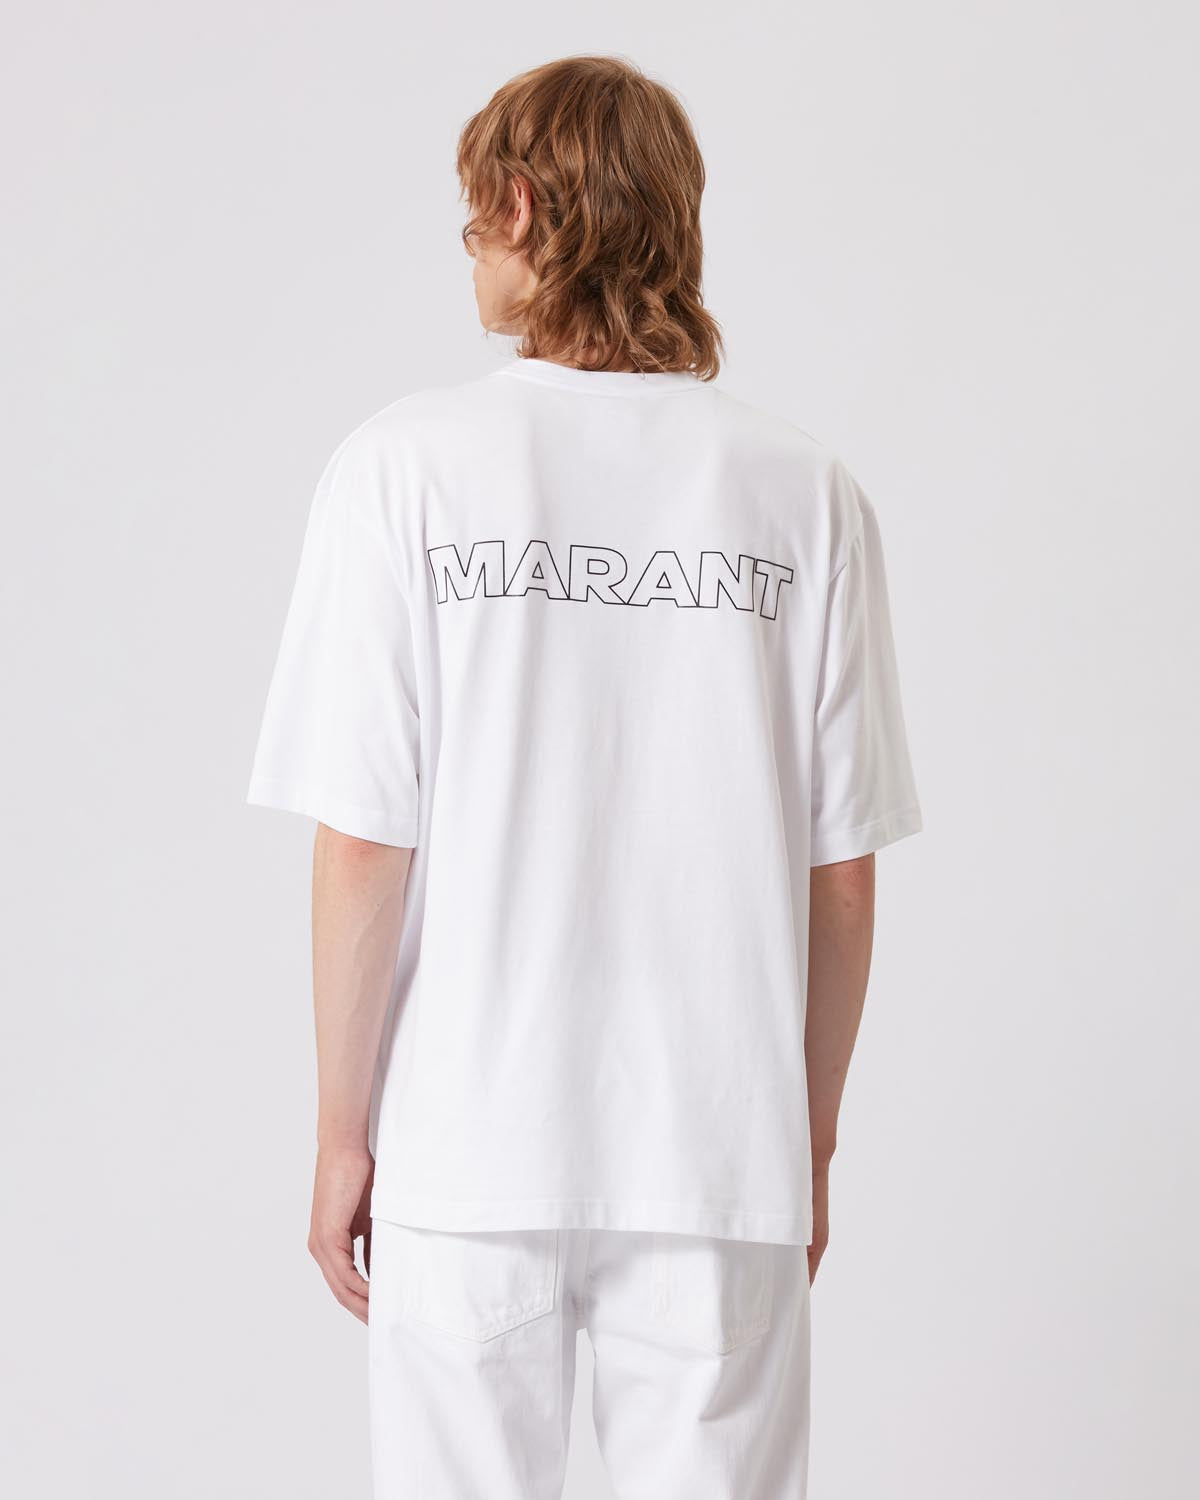 Guizy "marant" コットン tシャツ Man 白 4